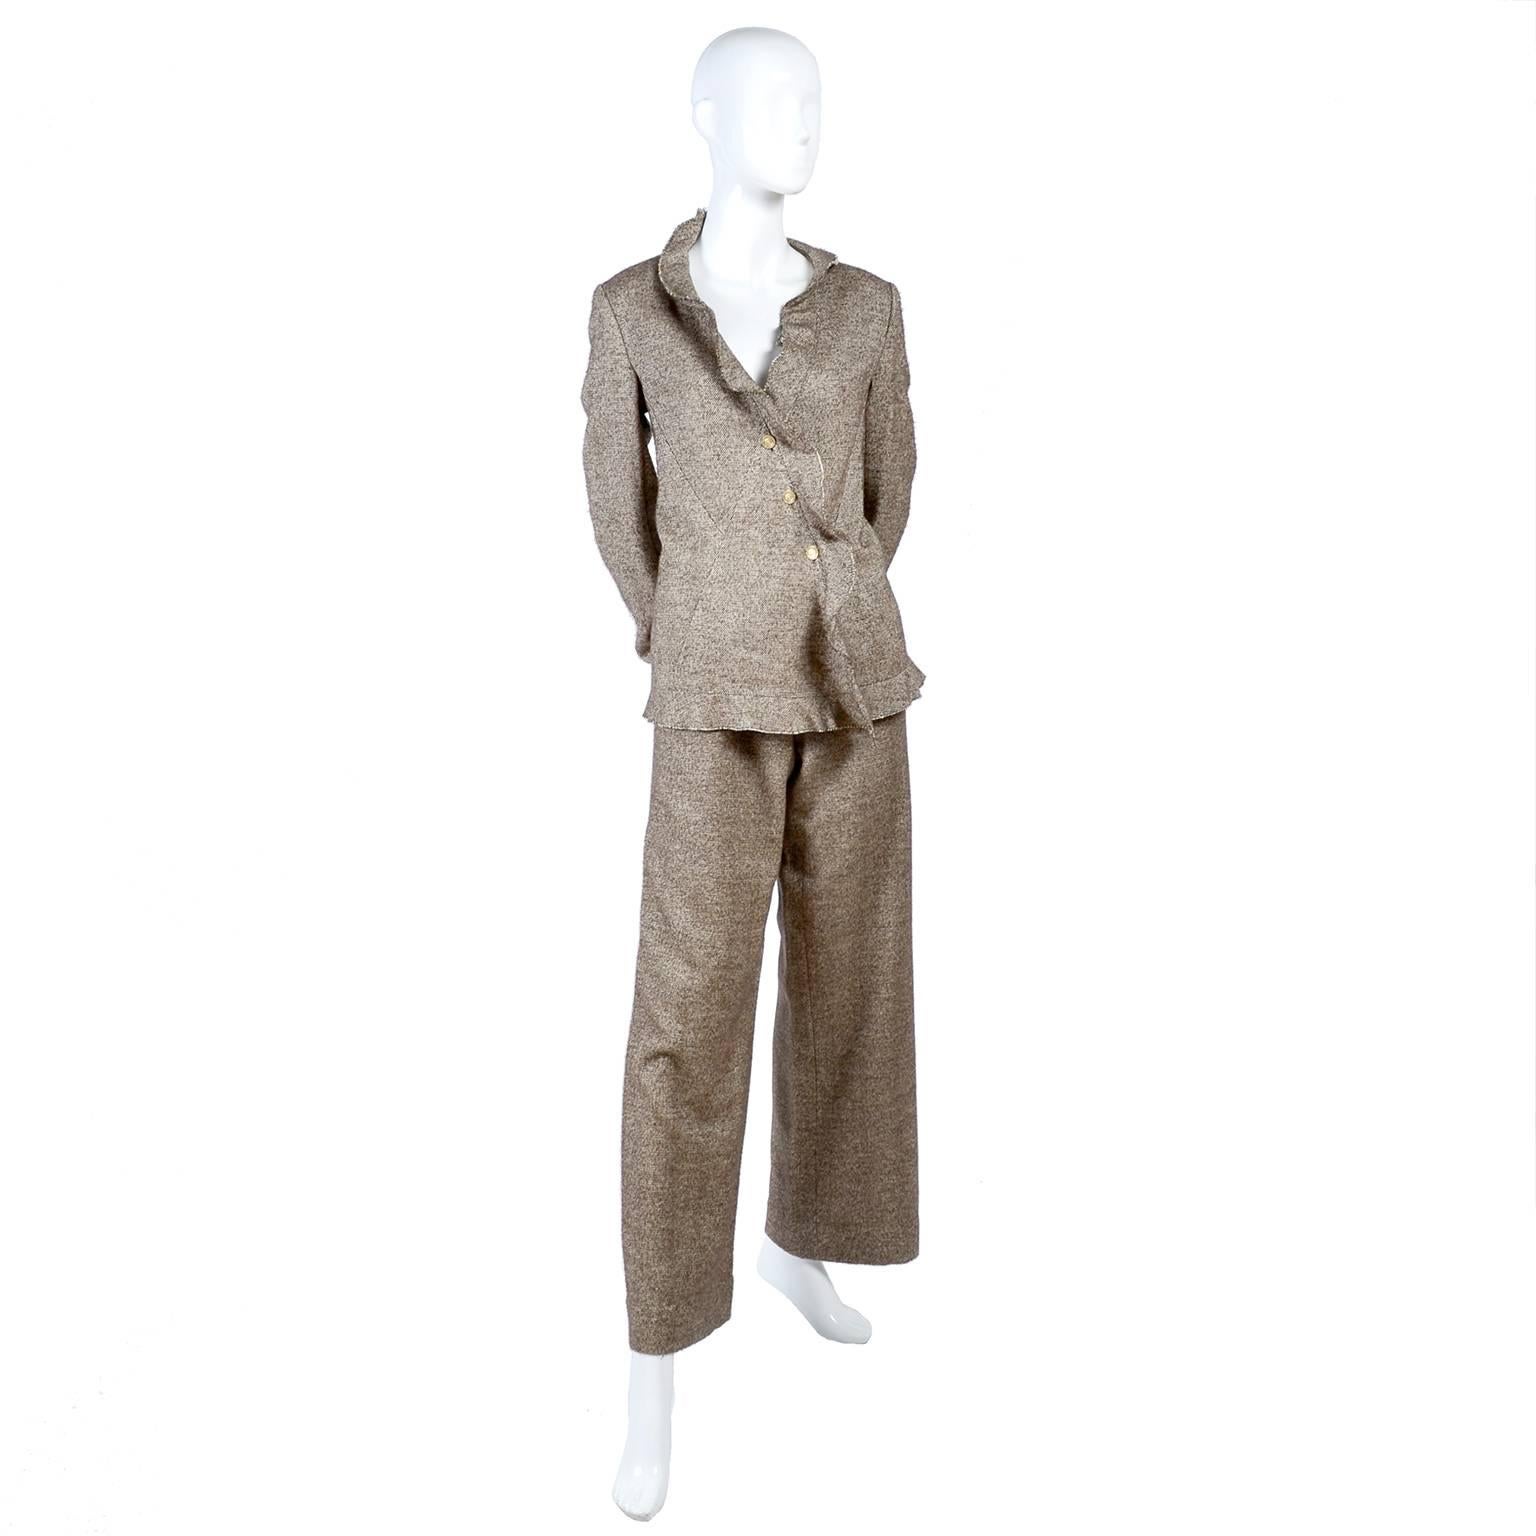 Chanel Jacket & Pants Suit From Autumn 2005 in Silk Alpaca Wool Blend w Ruffles 9